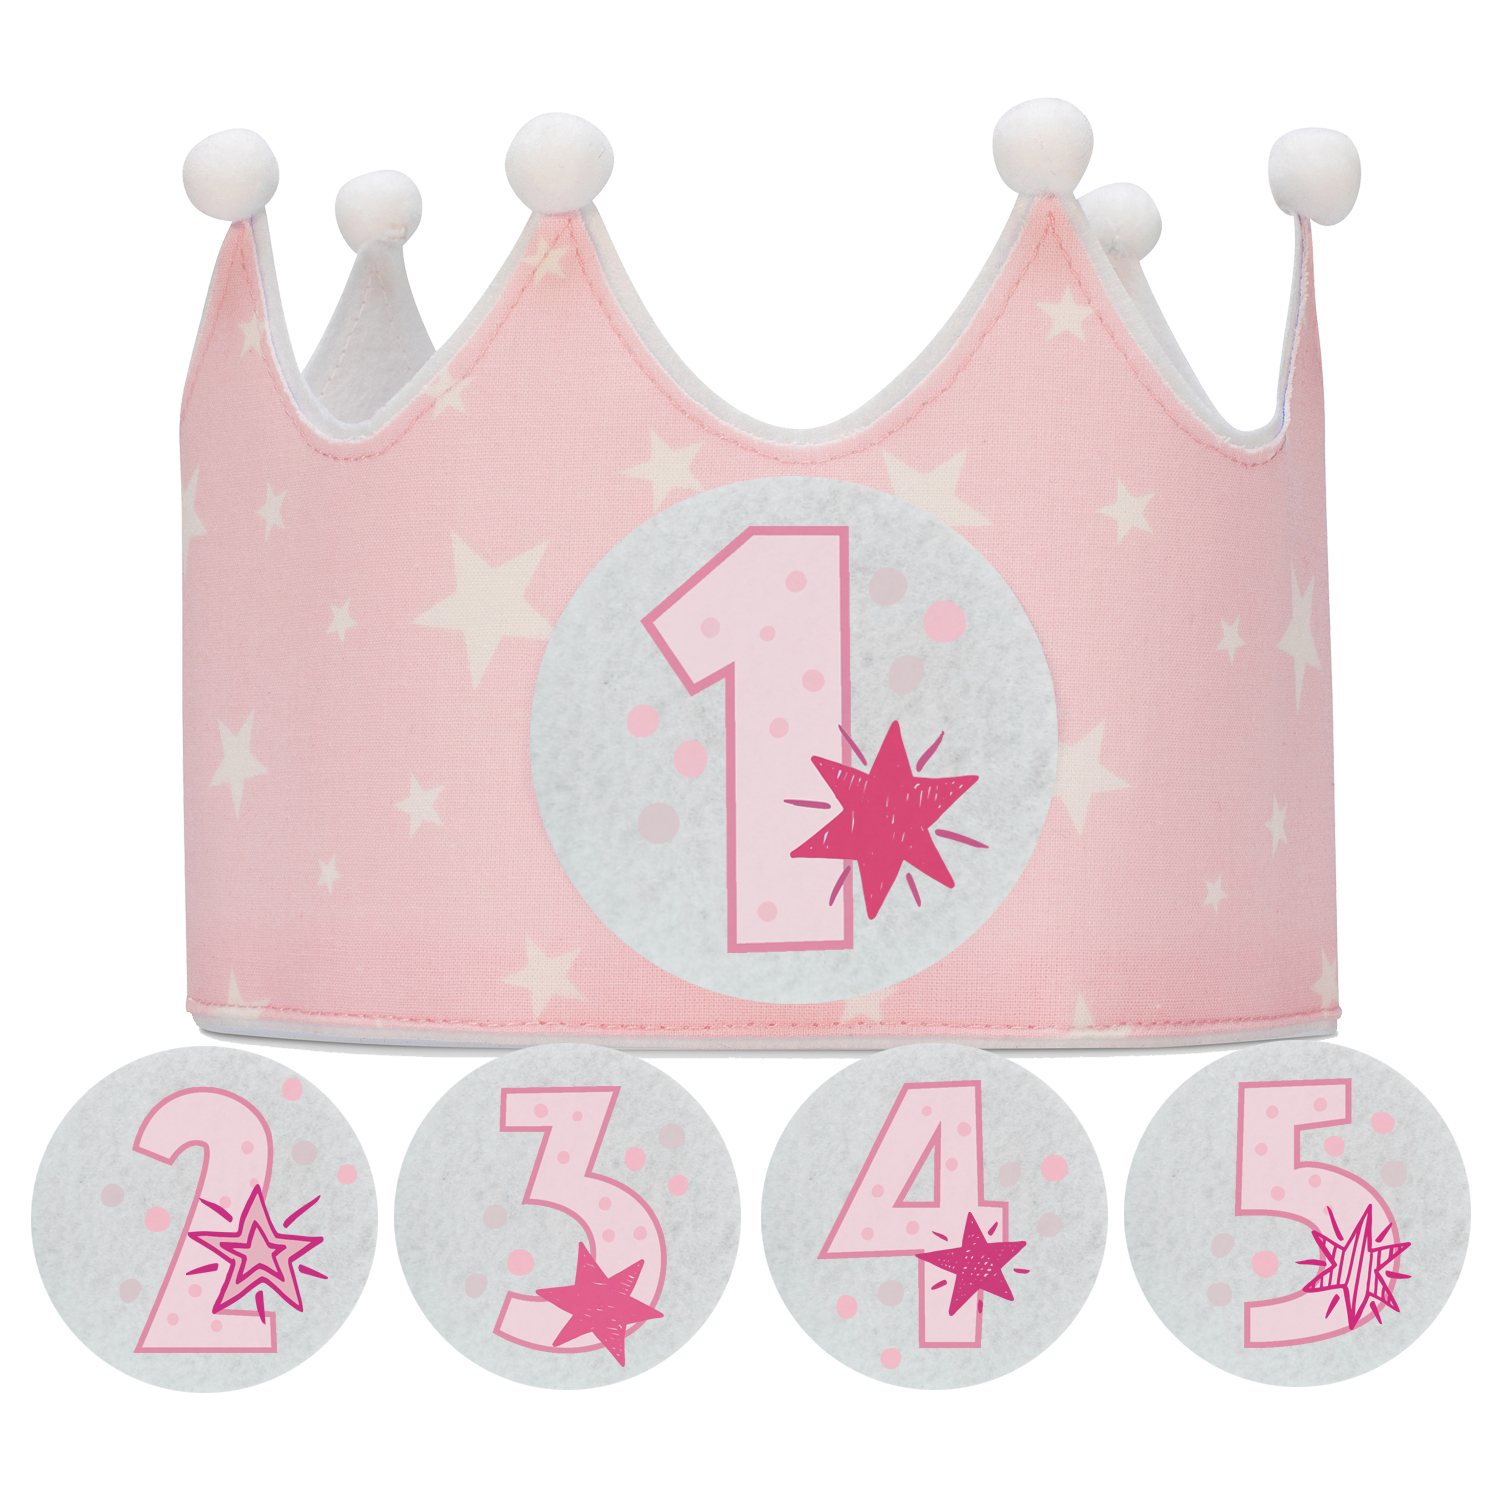 Corona Cumpleaños 1 Año con 9 Números Intercambiables - De 1 a 9